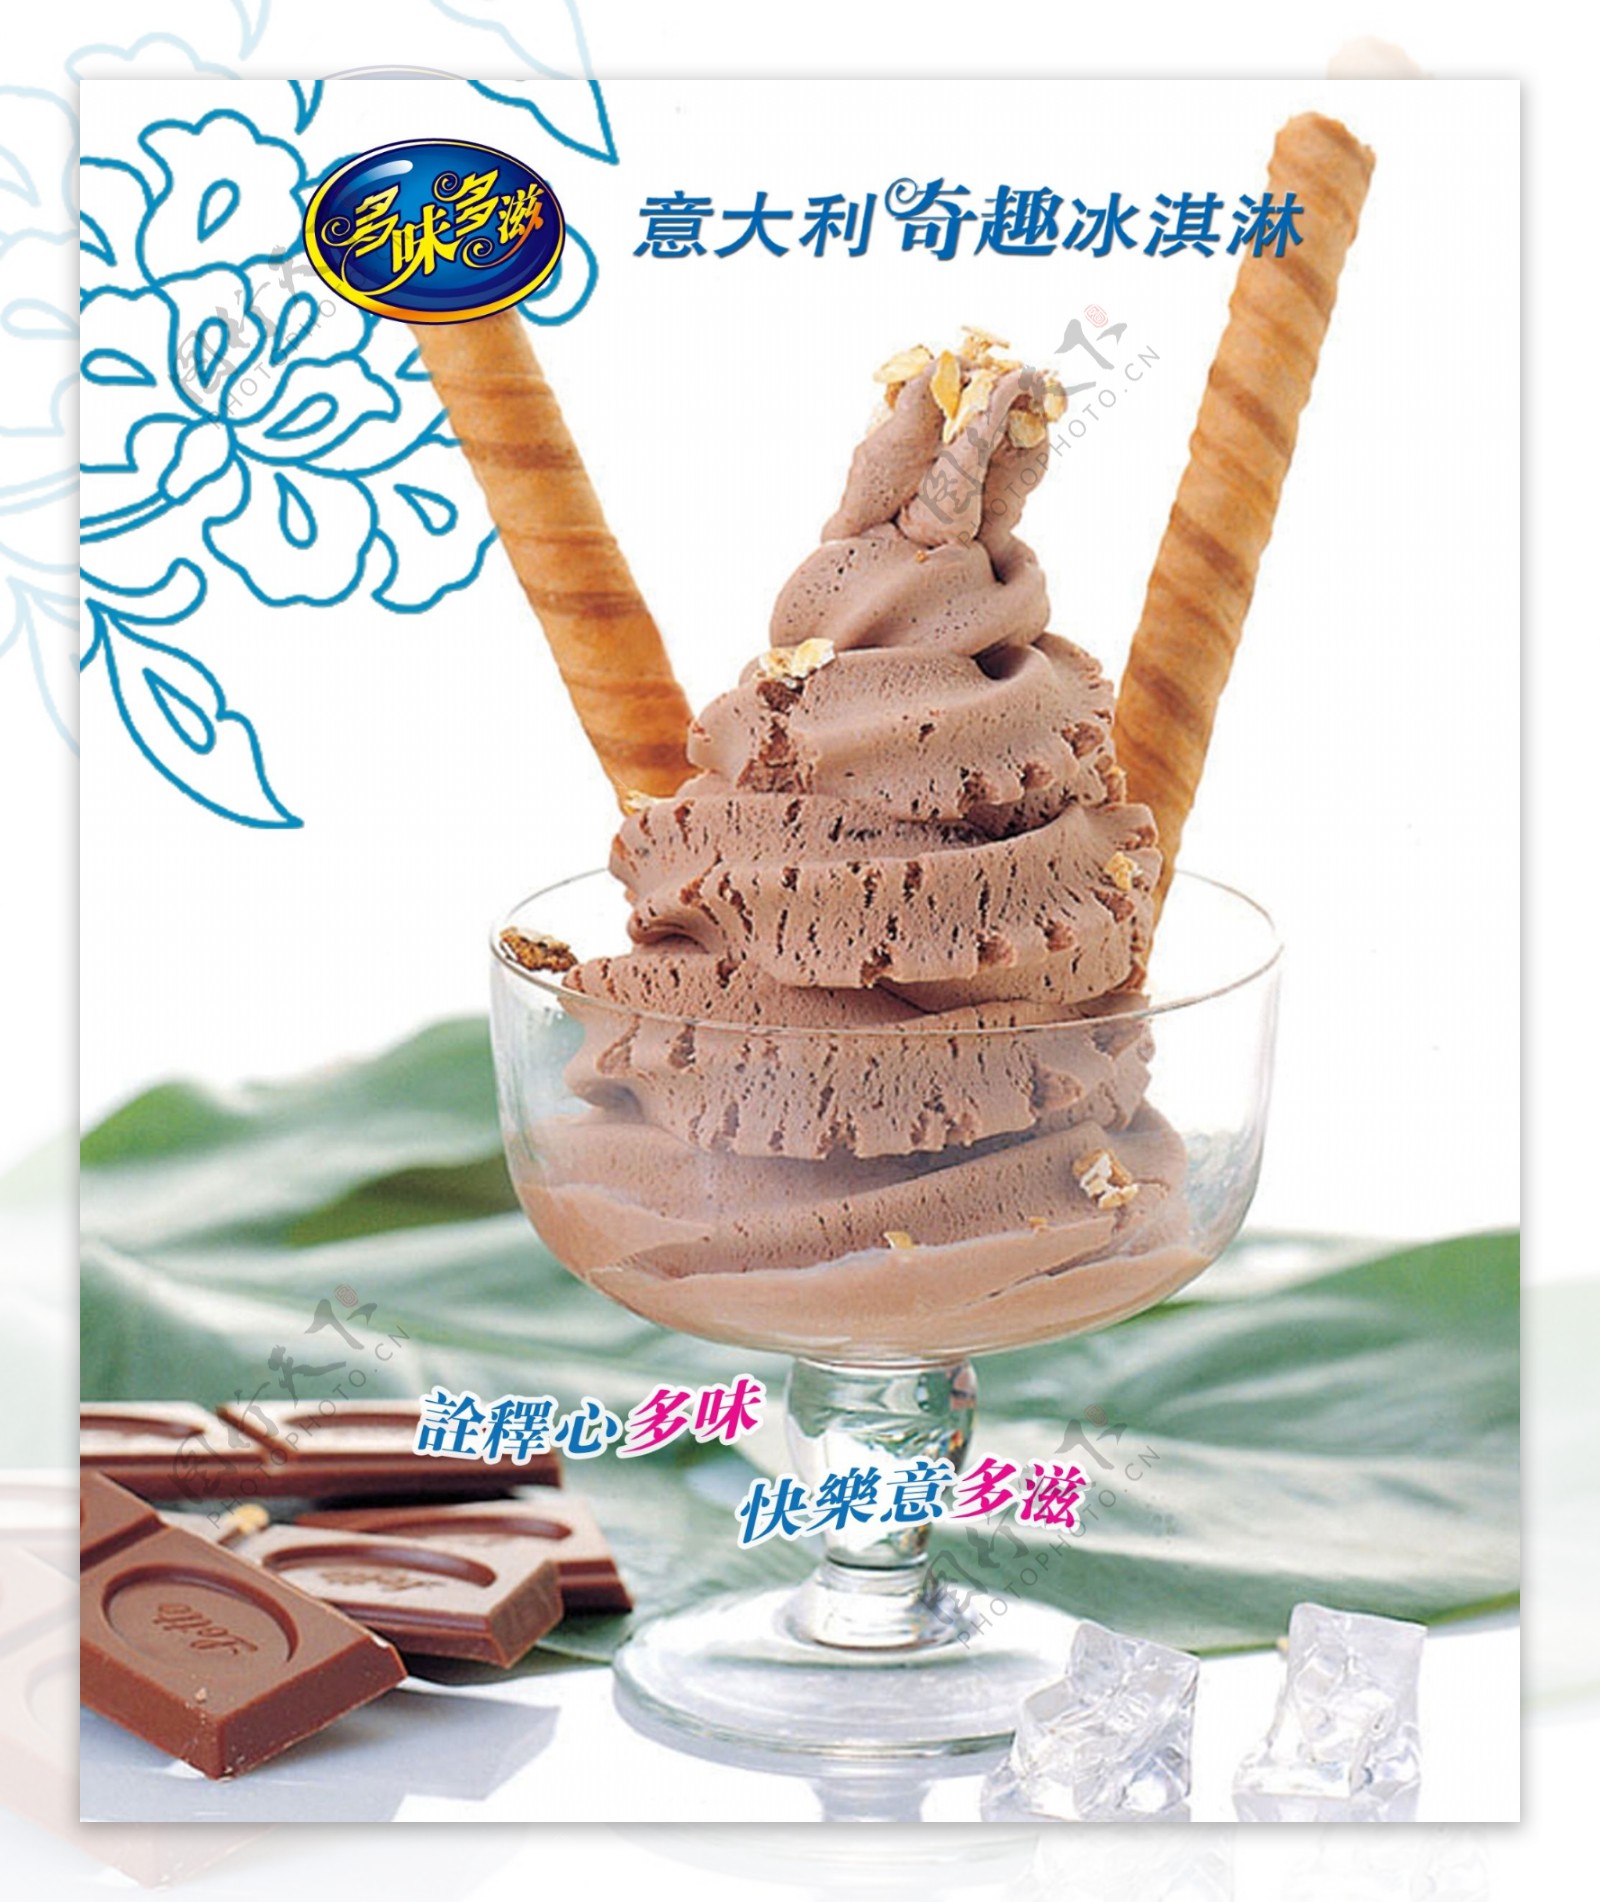 多位多滋奇趣冰淇淋海报图片